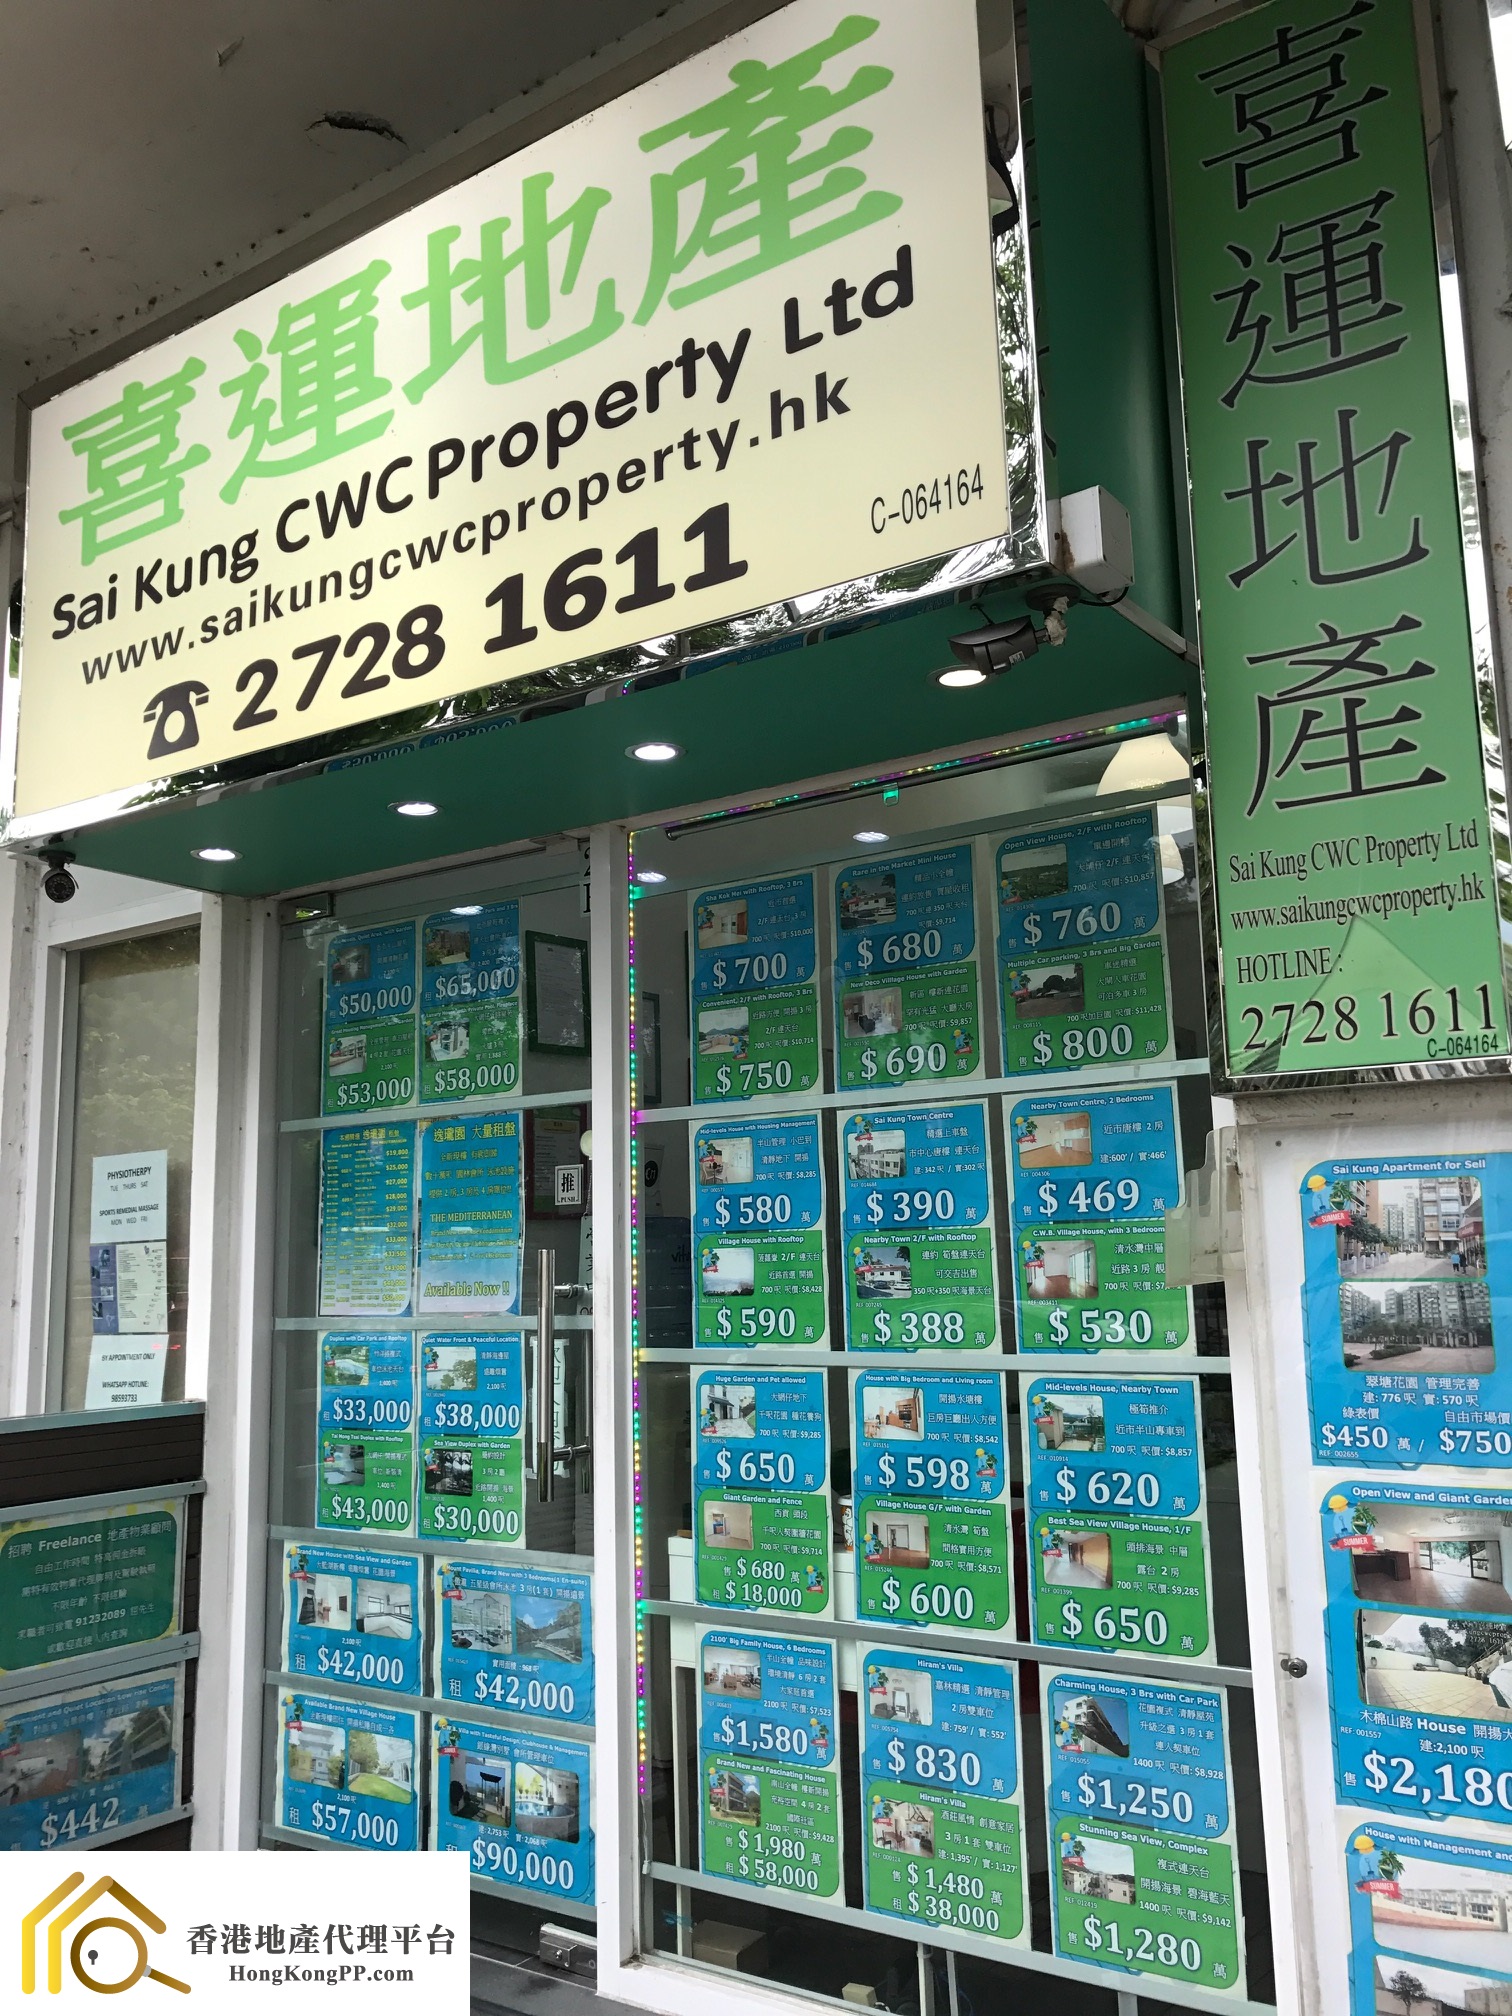 住宅地產代理: 西貢喜運地產  Sai Kung CWC Property